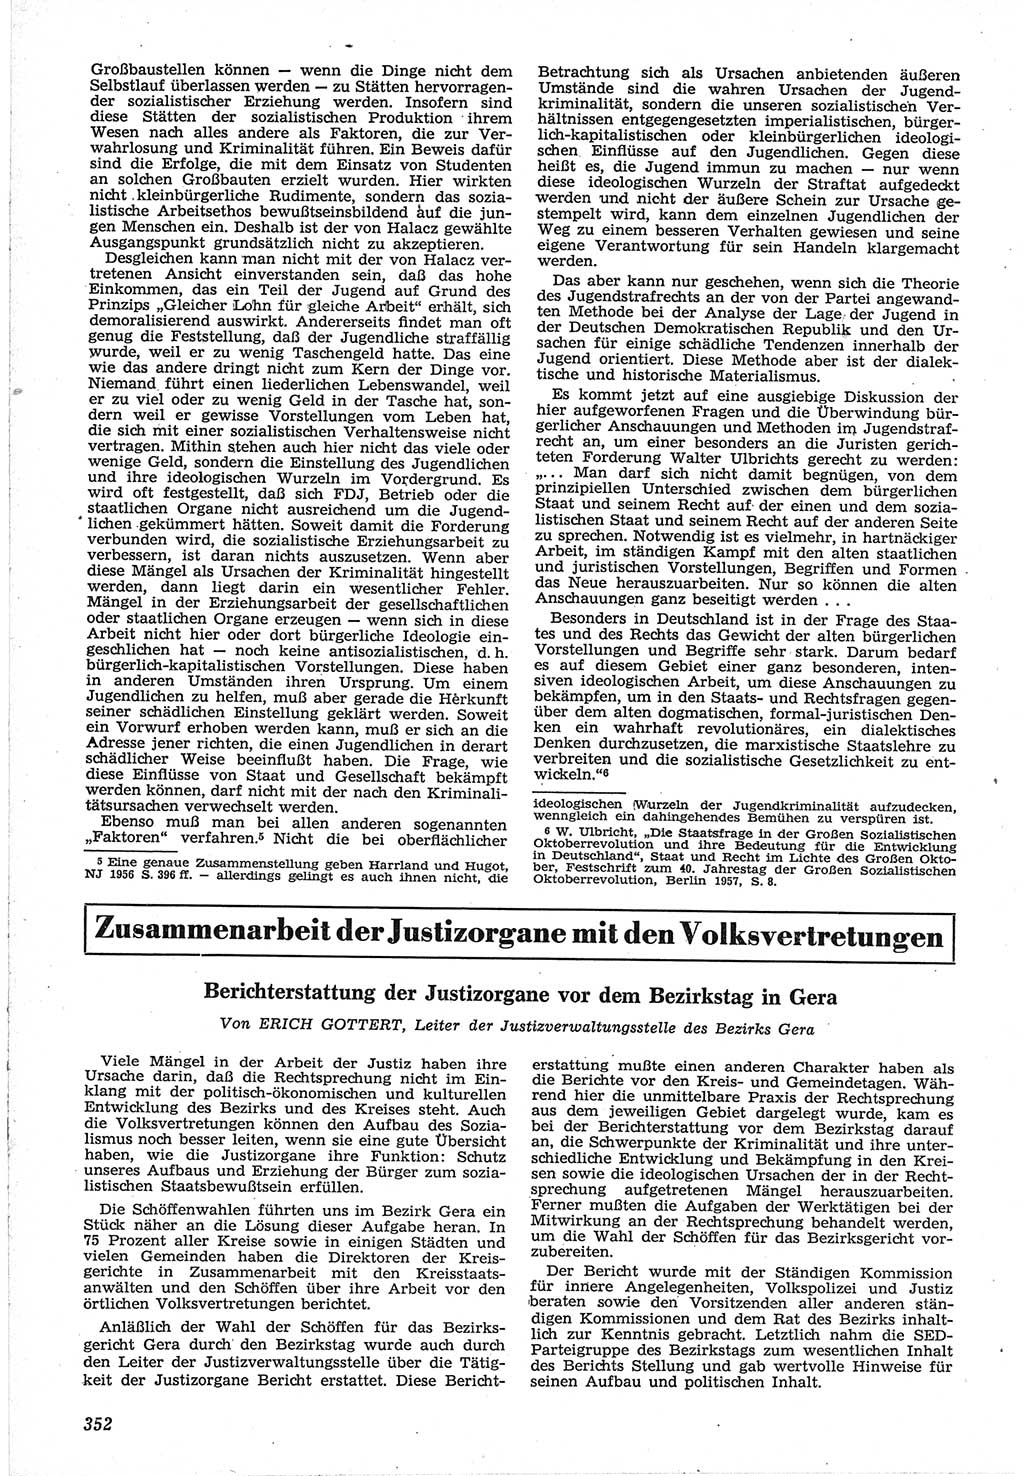 Neue Justiz (NJ), Zeitschrift für Recht und Rechtswissenschaft [Deutsche Demokratische Republik (DDR)], 12. Jahrgang 1958, Seite 352 (NJ DDR 1958, S. 352)